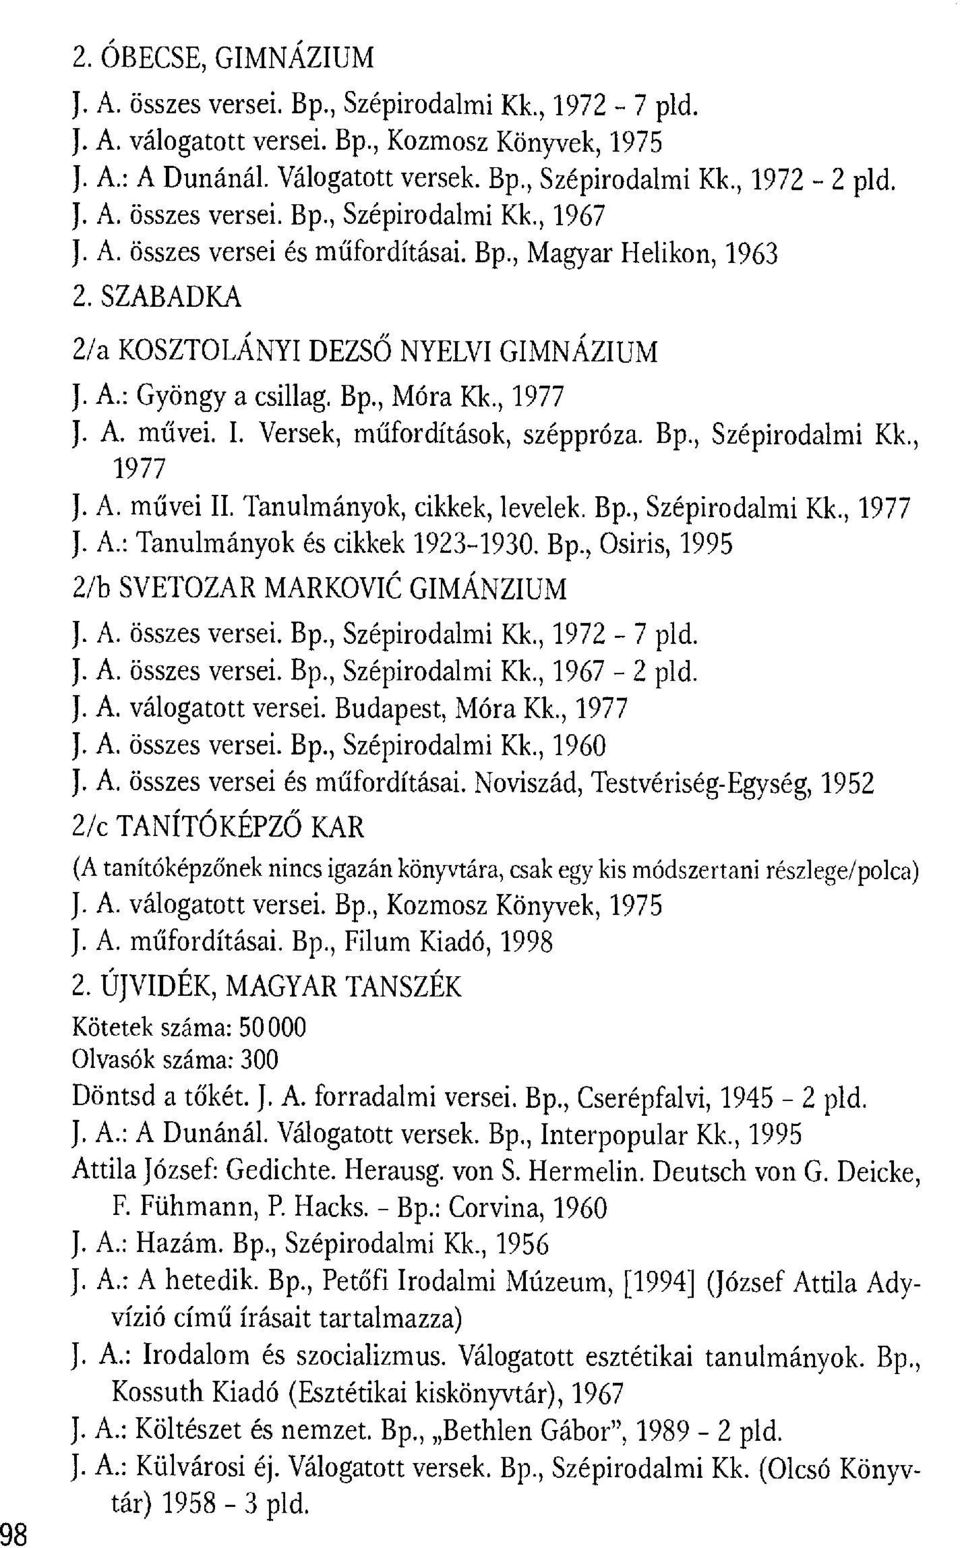 Versek, műfordítások, széppróza. Bp., Szépirodalmi Kk., 1977 J. A. művei II. Tanulmányok, cikkek, levelek. Bp., Szépirodalmi Kk., 1977 J. A.: Tanulmányok és cikkek 1923-1930. Bp., Osiris, 1995 2/b SVETOZAR MARKOVI Ć GIMNNZIUM - 7 pld.